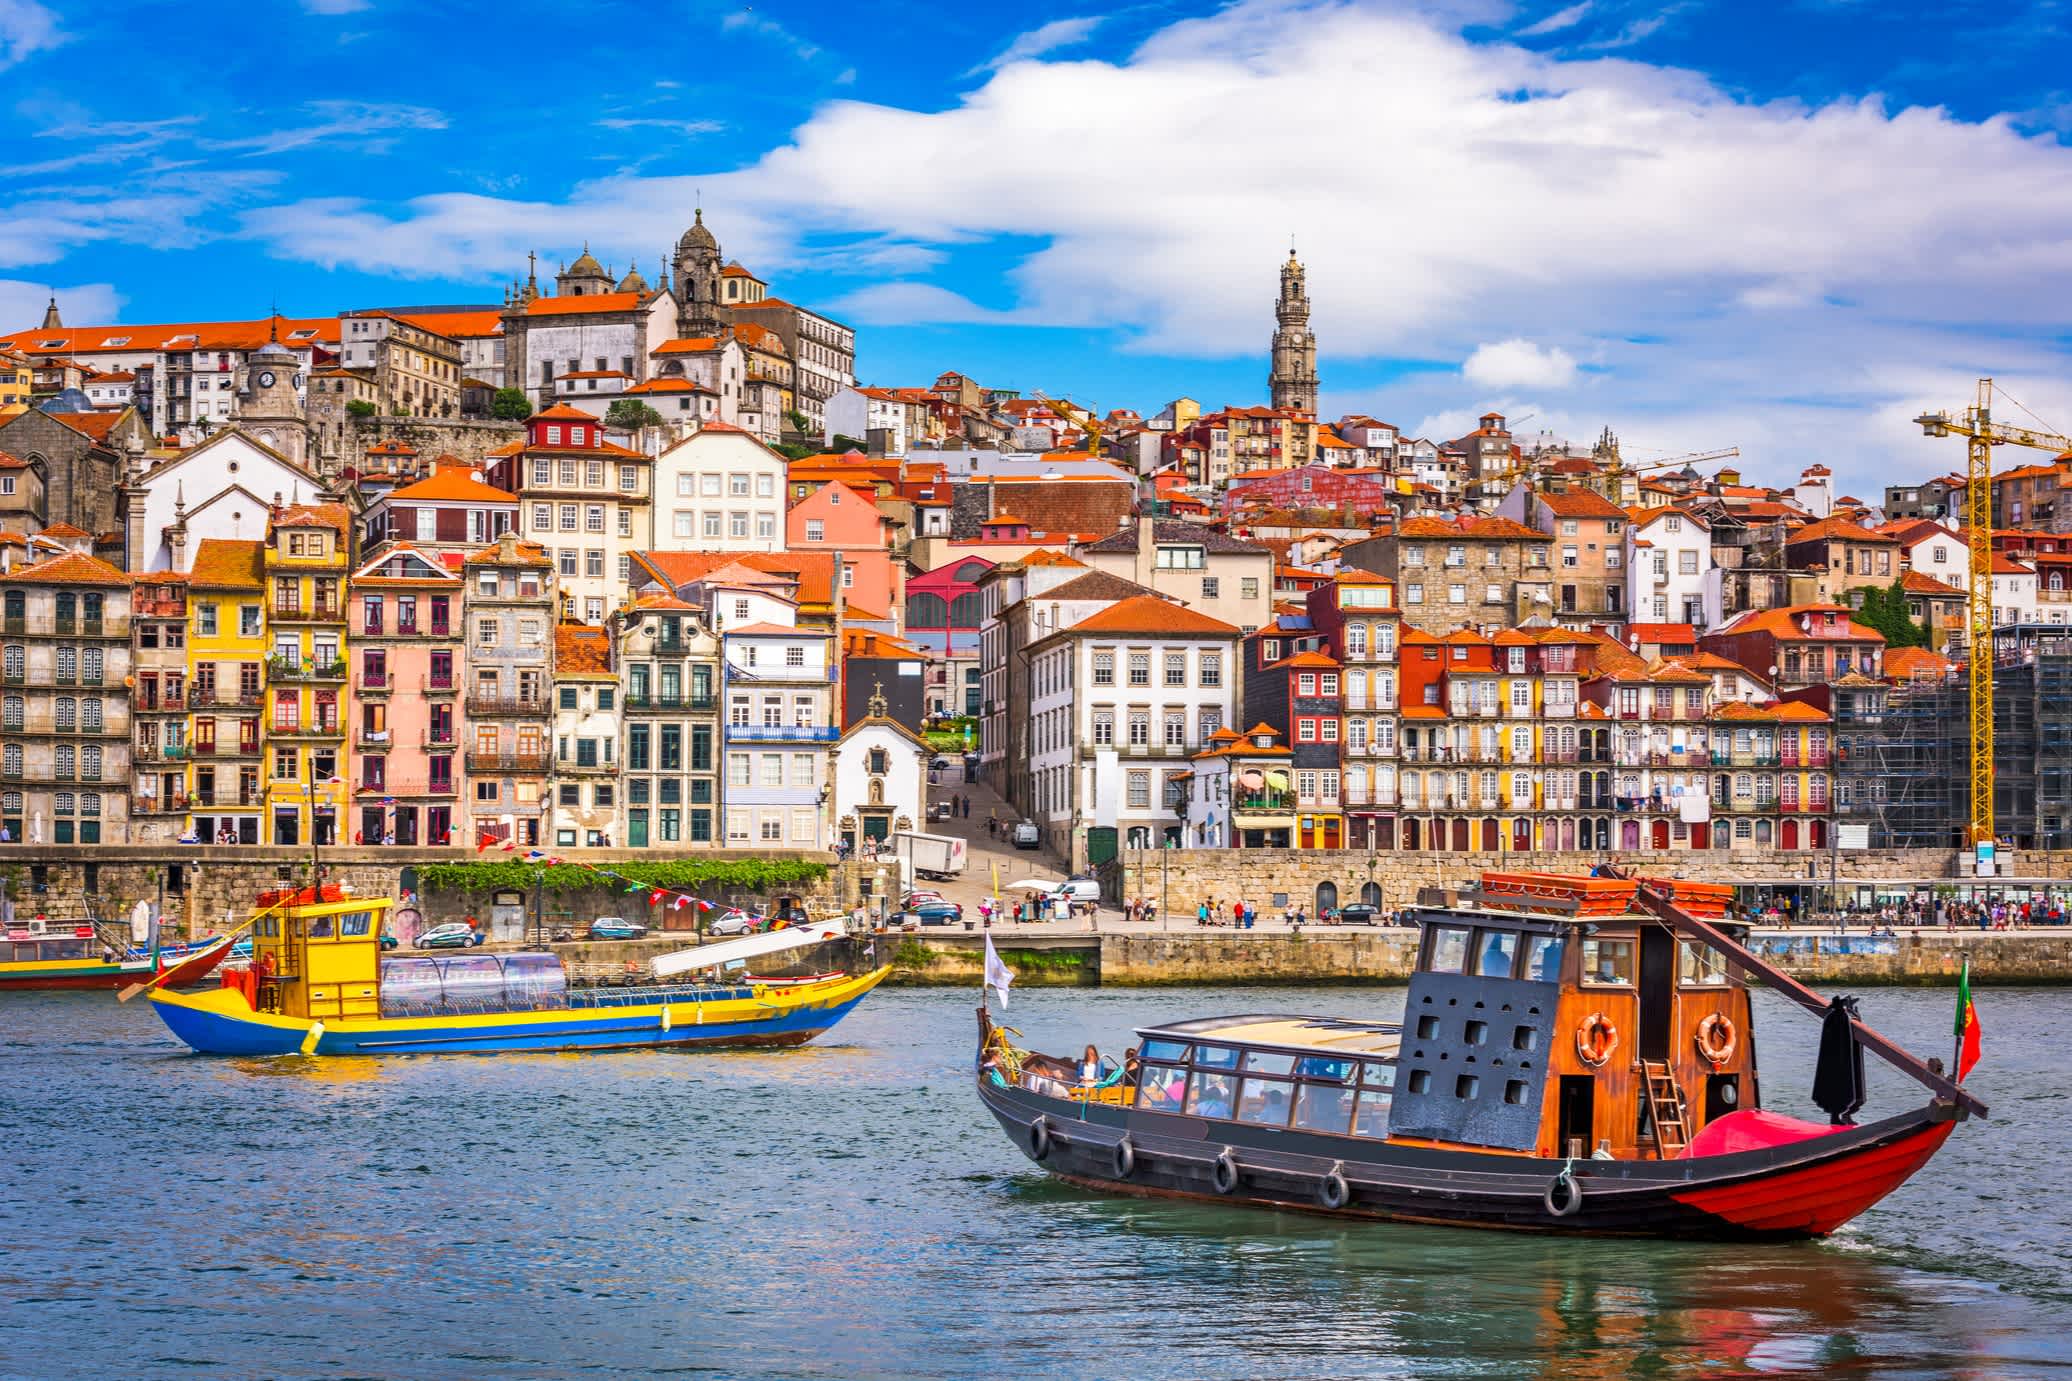 Vue sur le fleuve Douro au Portugal avec des bateaux et des maisons typiques avec des carreaux de mosaïque